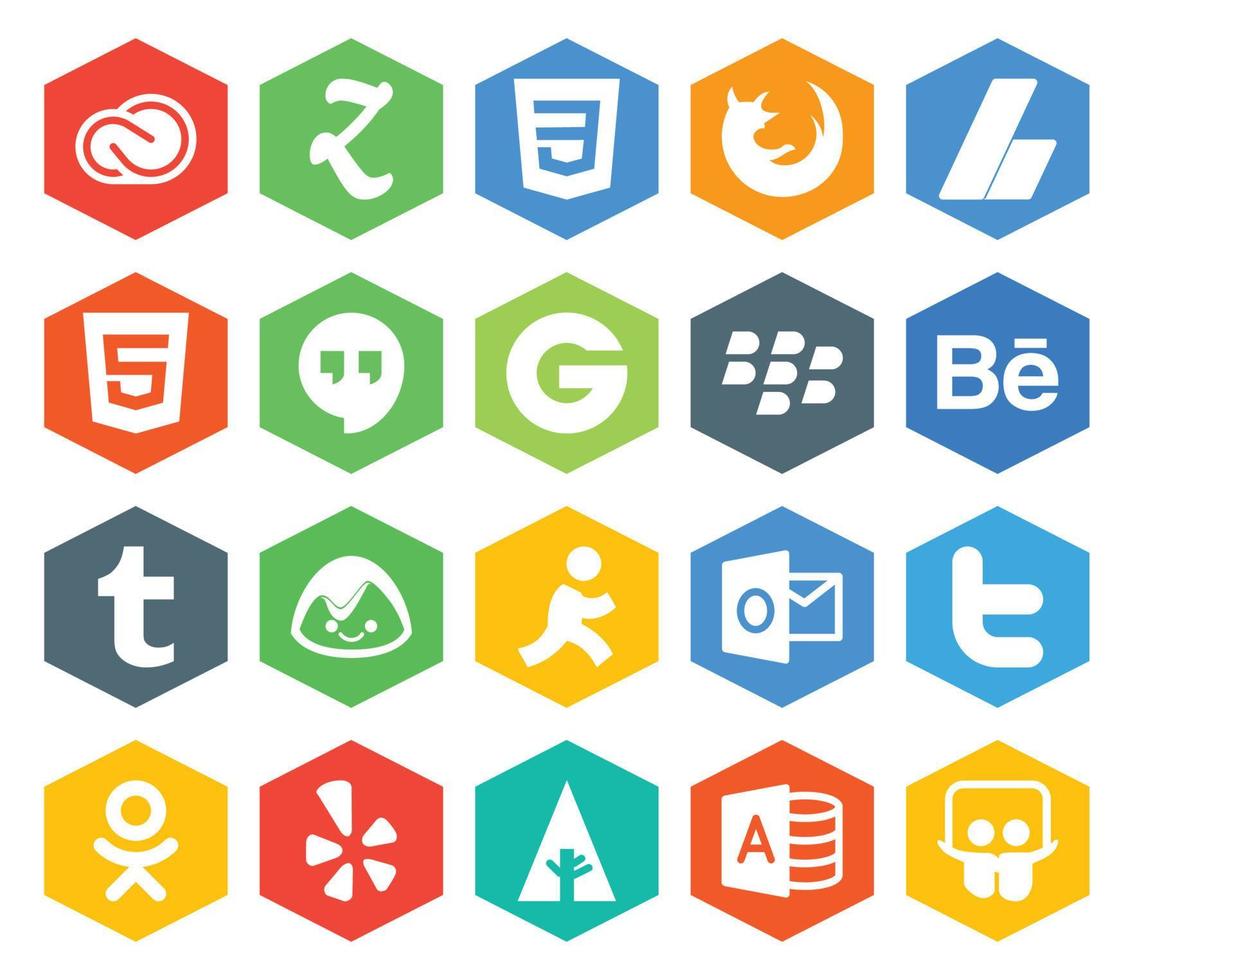 Paquete de 20 íconos de redes sociales que incluye anuncios de Outlook Basecamp Tumblr Blackberry vector